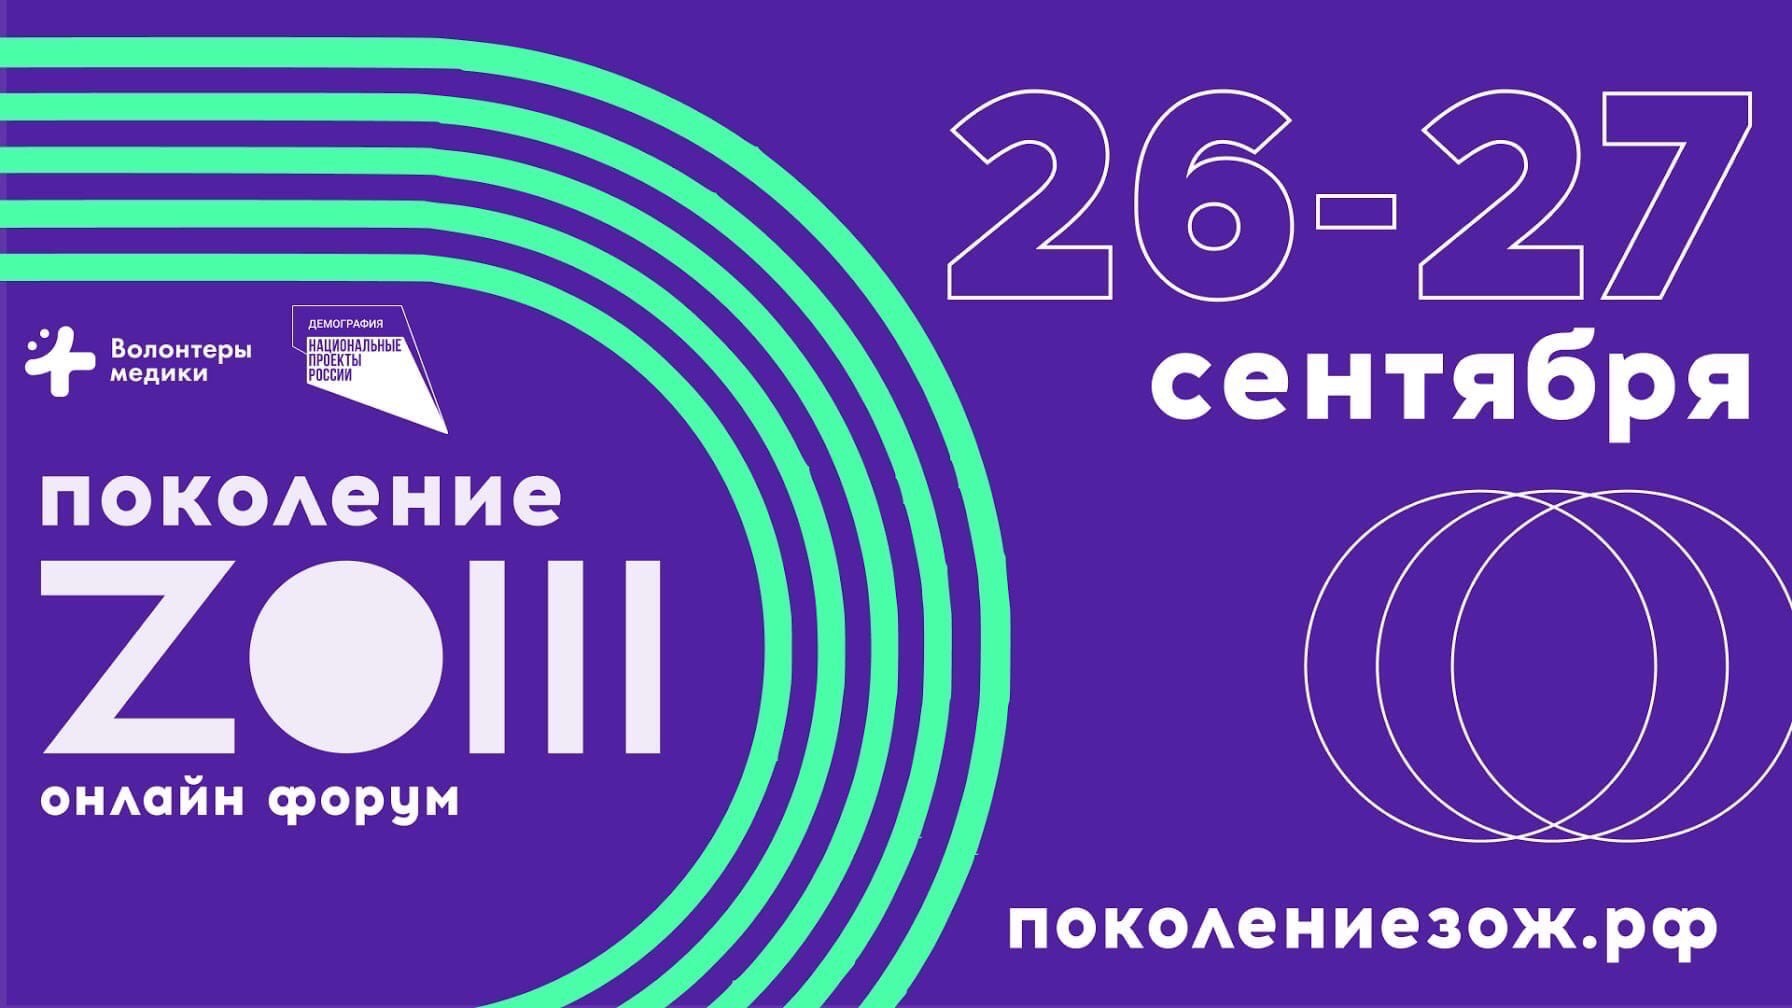 26-27 сентября 2020 г. Приглашаем на Всероссийский форум «Поколение ZОЖ» 